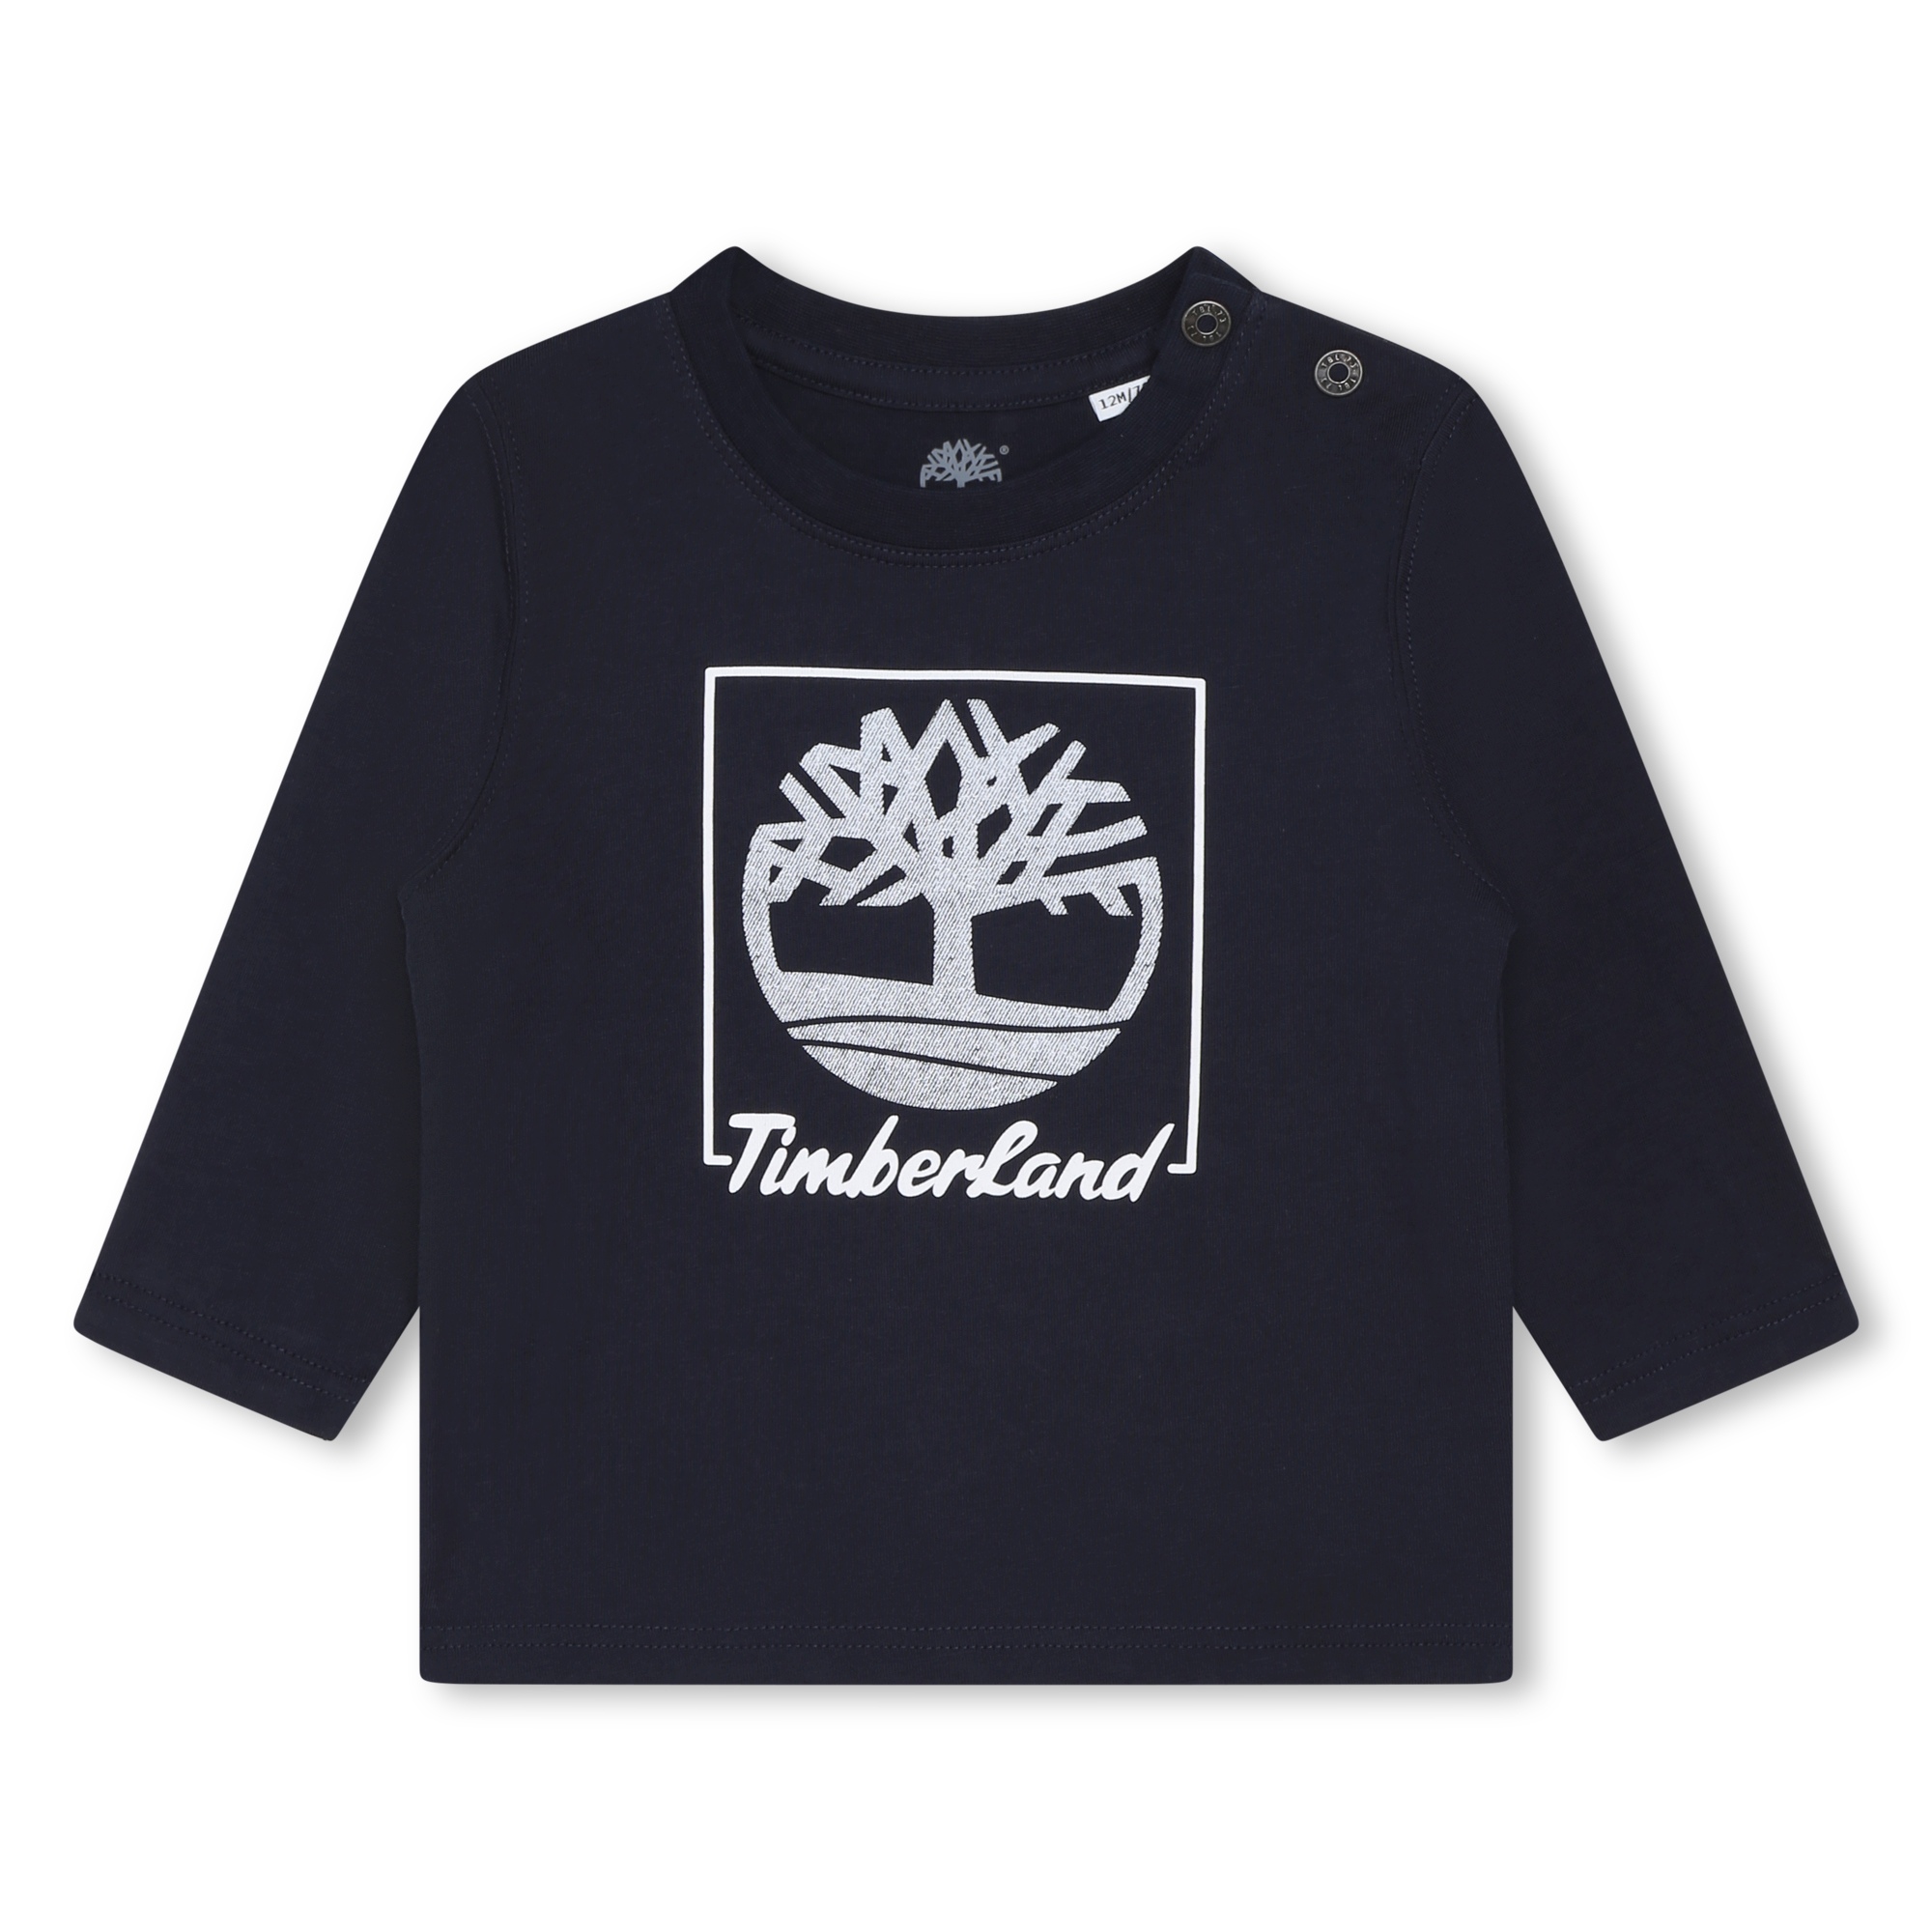 Langarm-Shirt mit Logo TIMBERLAND Für JUNGE